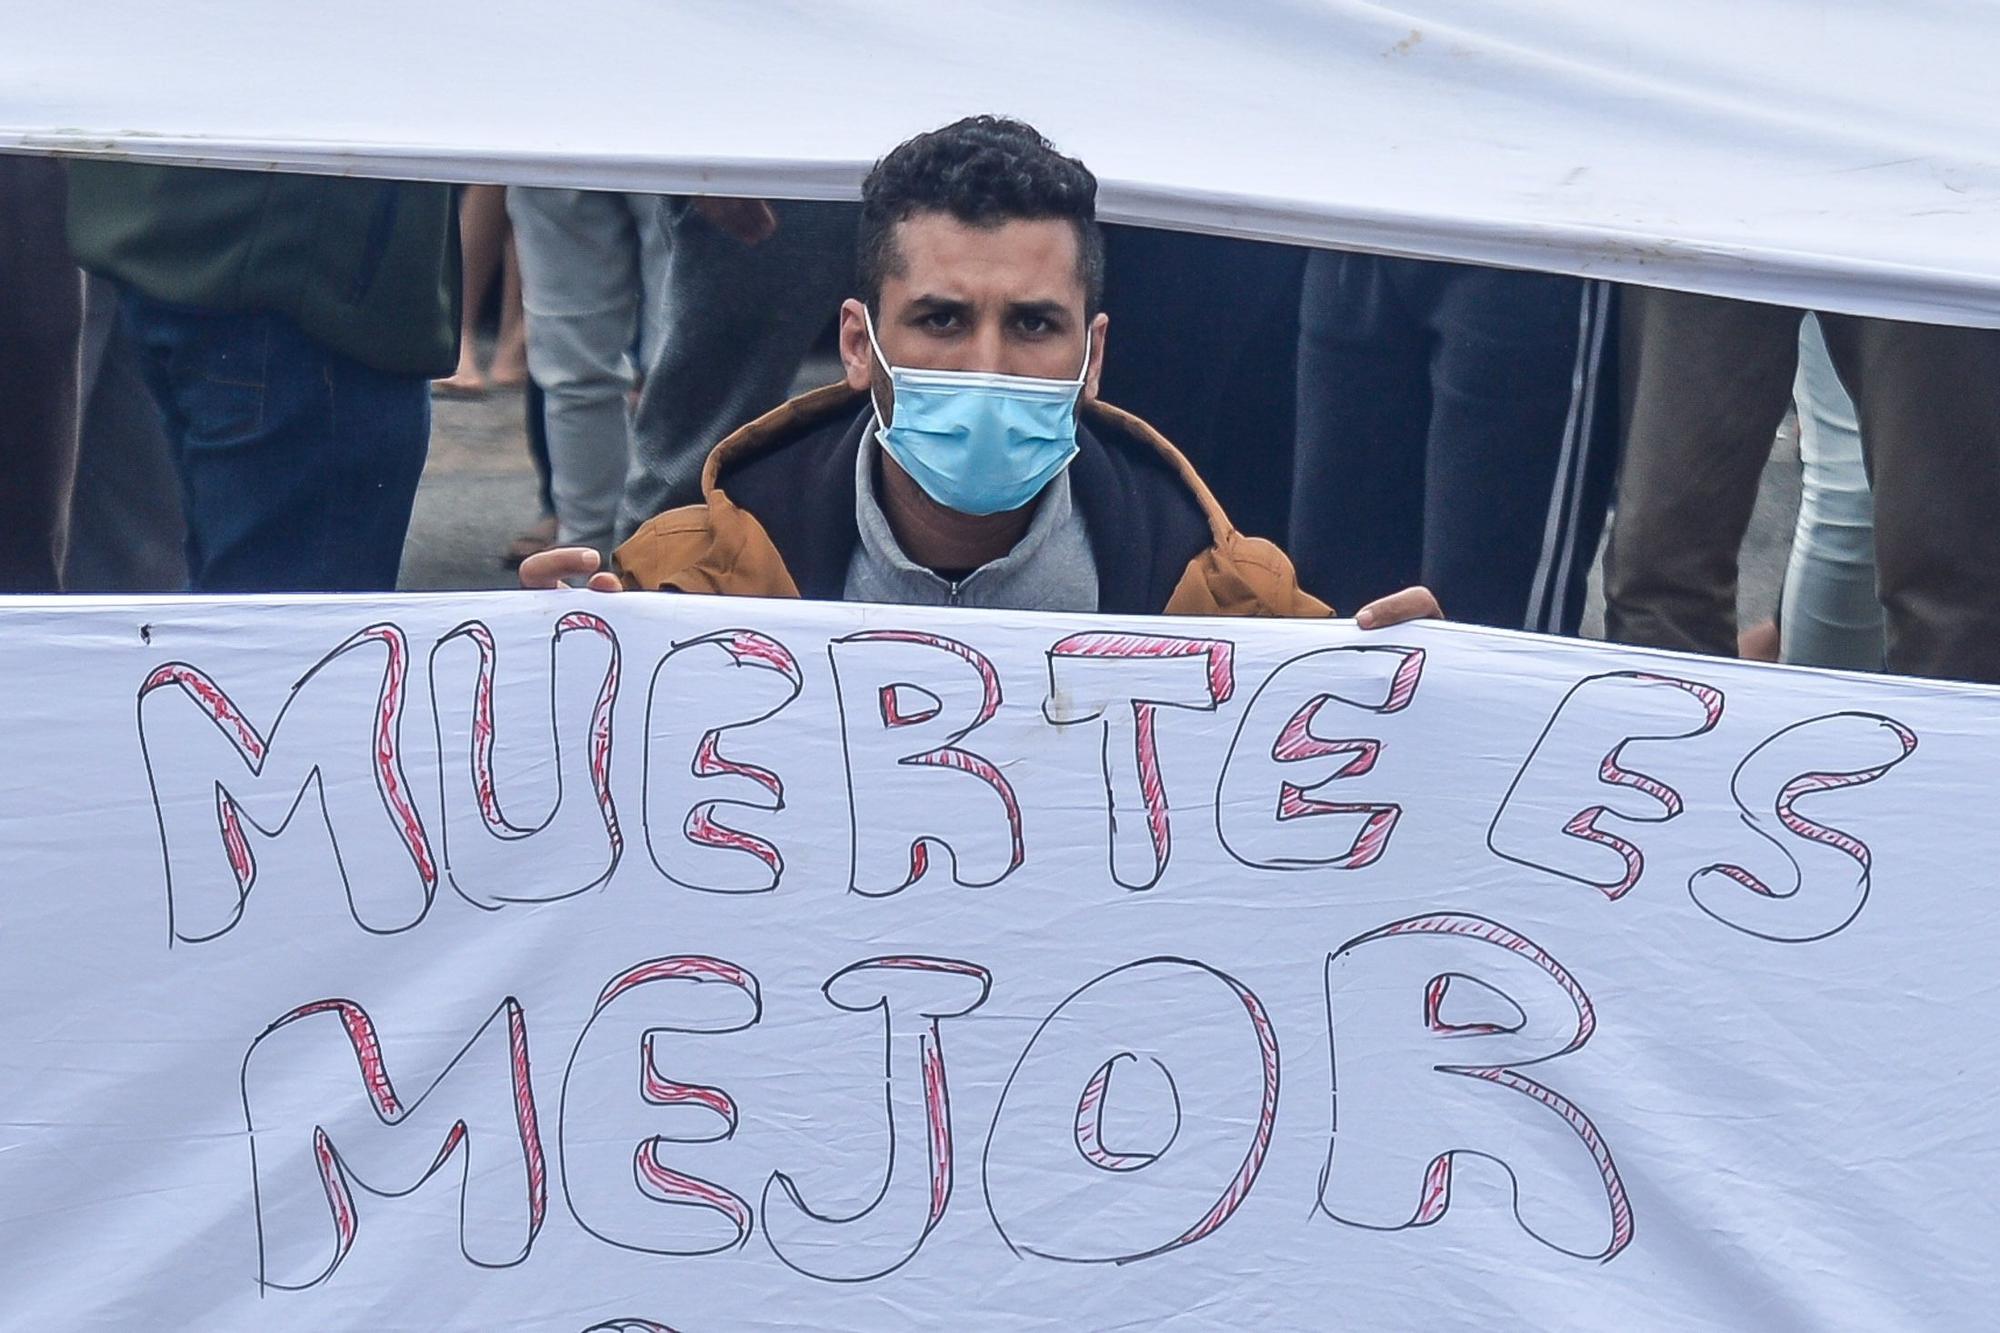 Protesta de los migrantes del Colegio León para que los dejen marcharse de Canarias